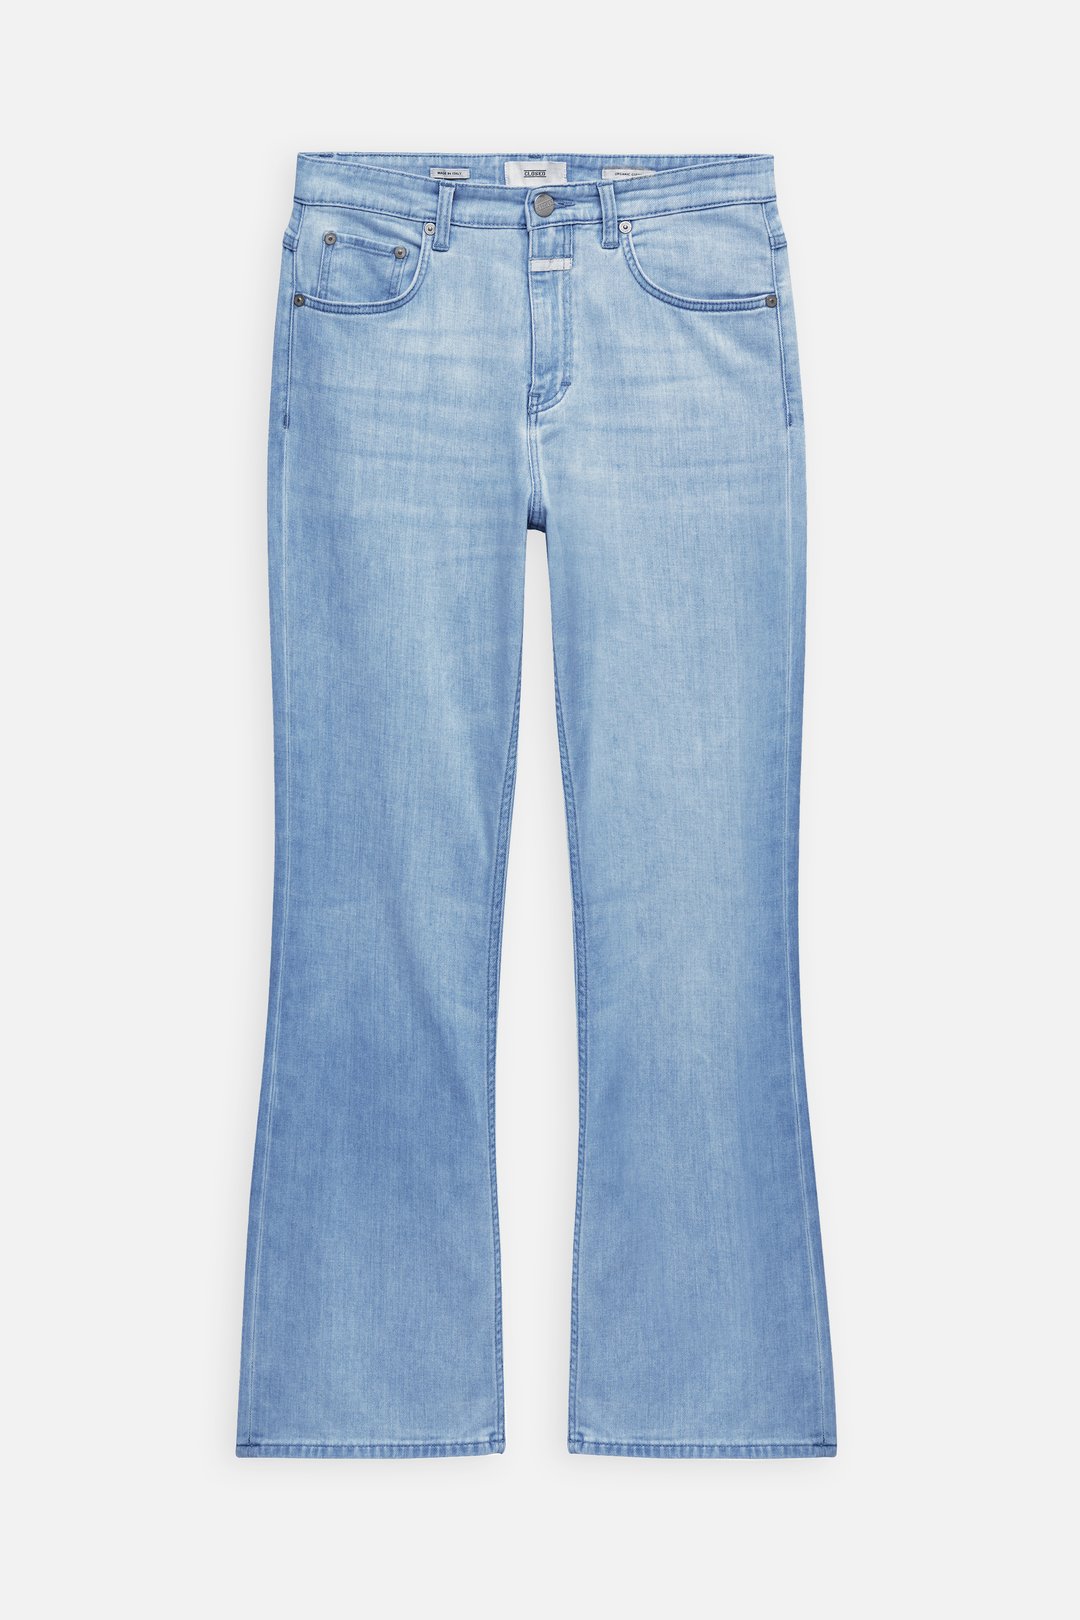 Mango boyfriend jeans Blue 32                  EU discount 63% WOMEN FASHION Jeans Boyfriend jeans Worn-in 